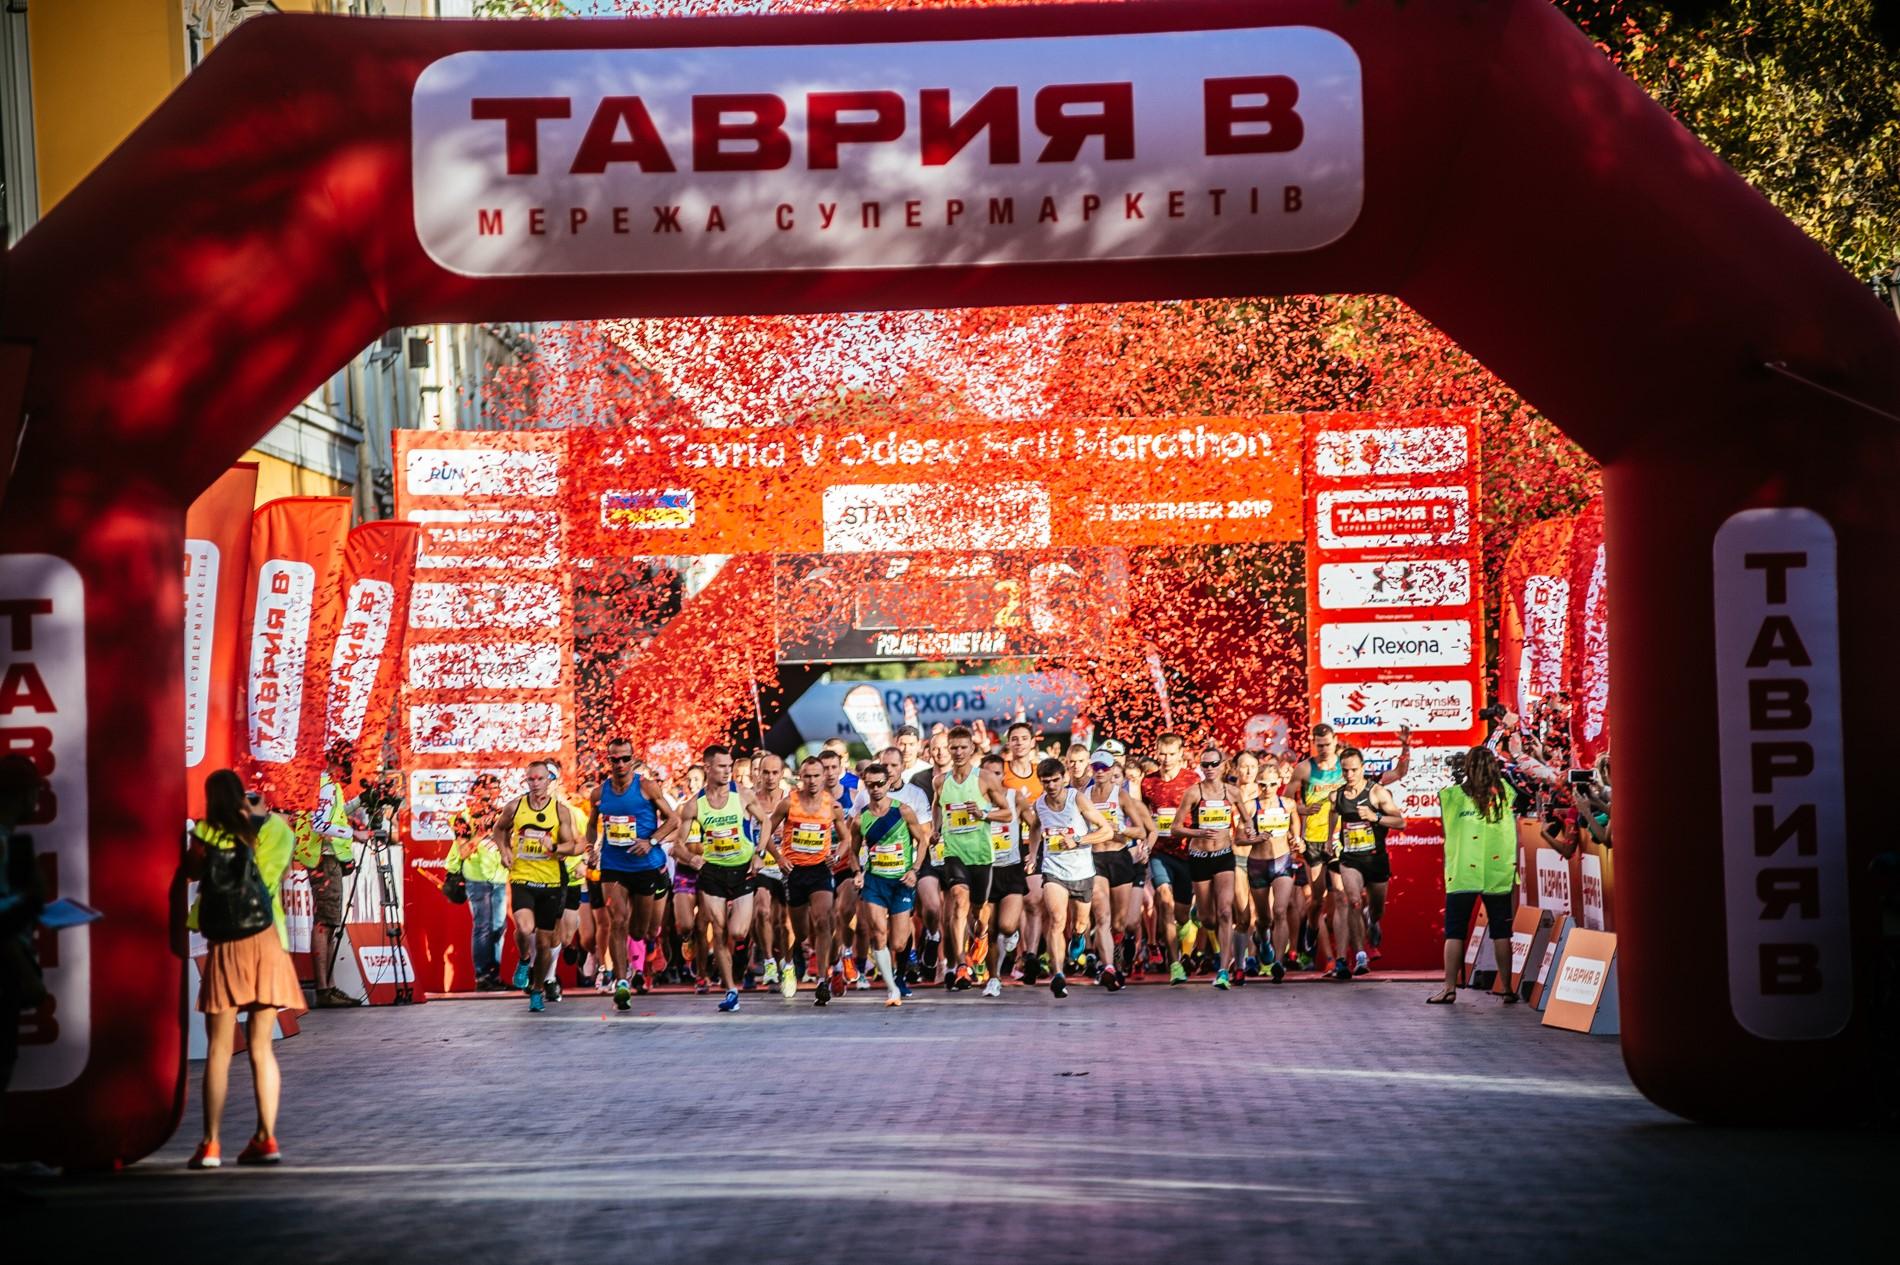 5th Tavria V Odessa Half Marathon